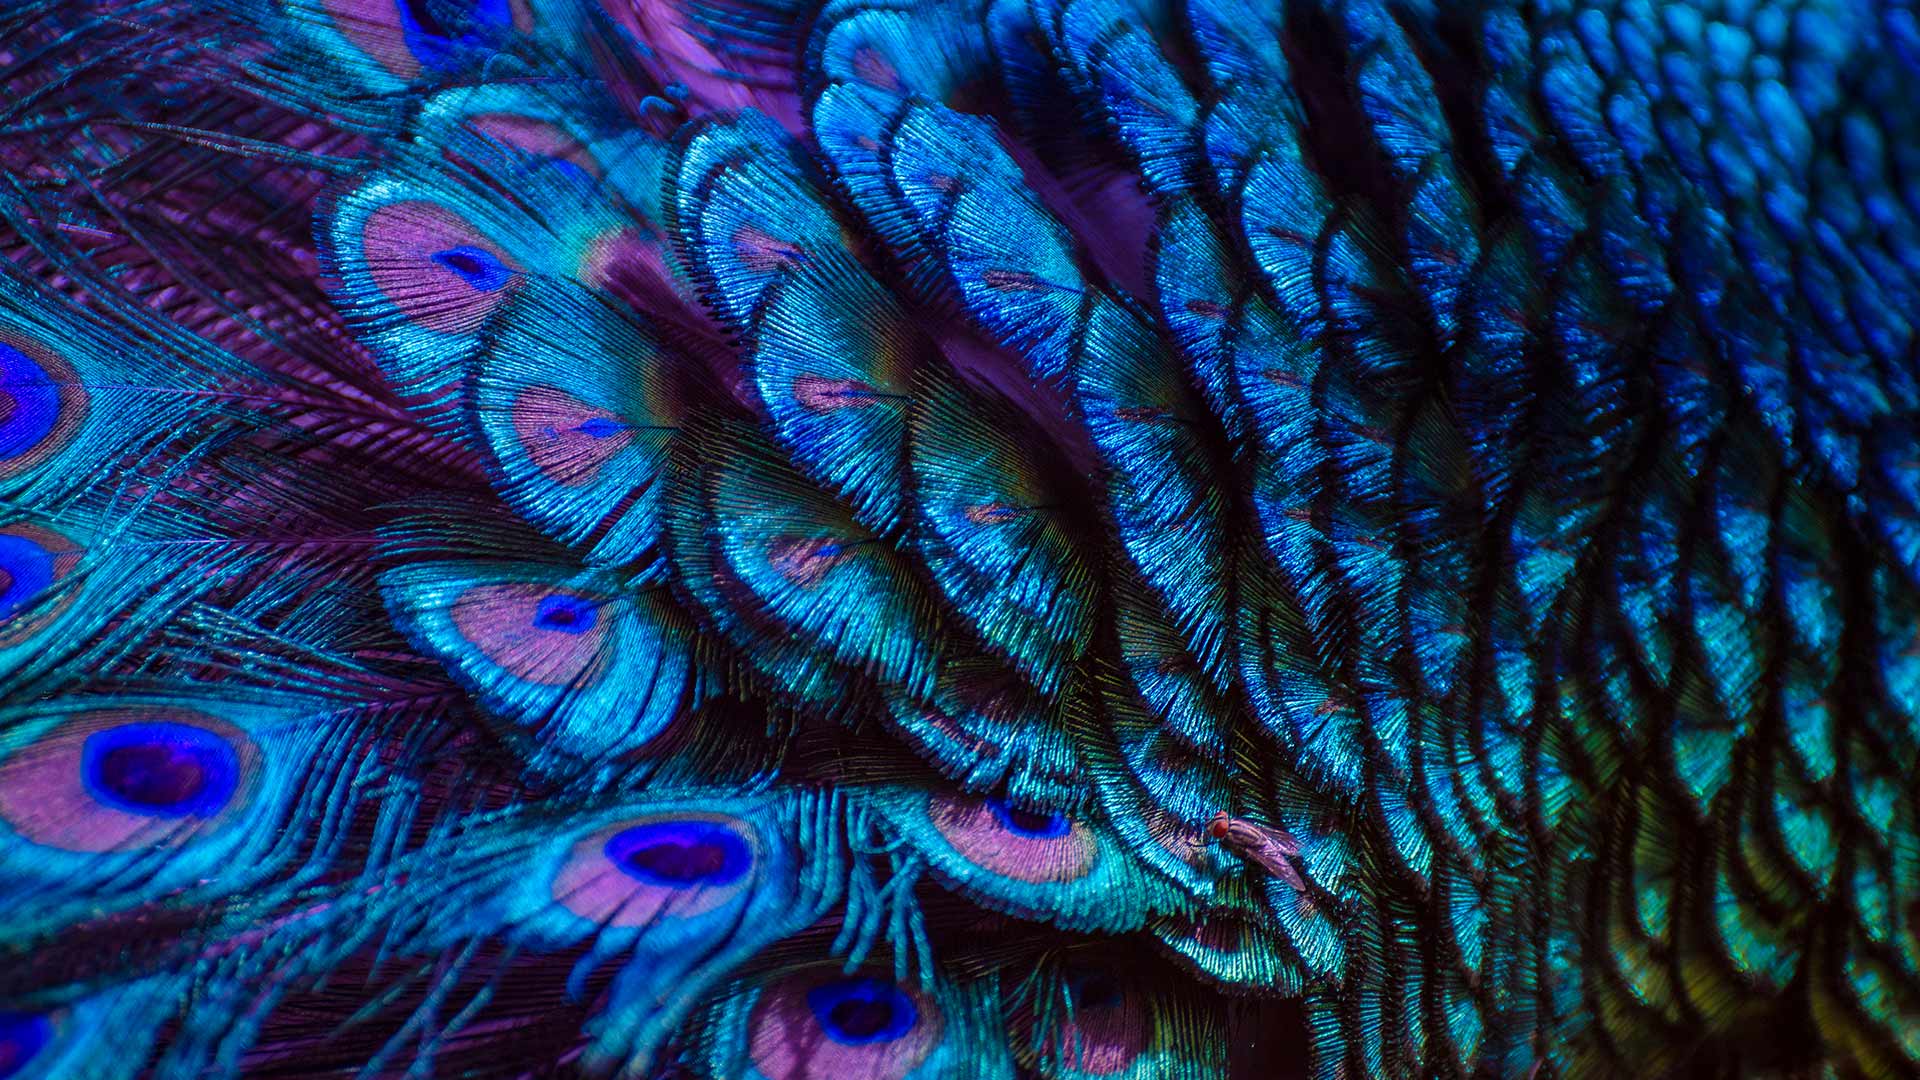 微软壁纸探索世界0330-孔雀羽毛（Peacock feathers）